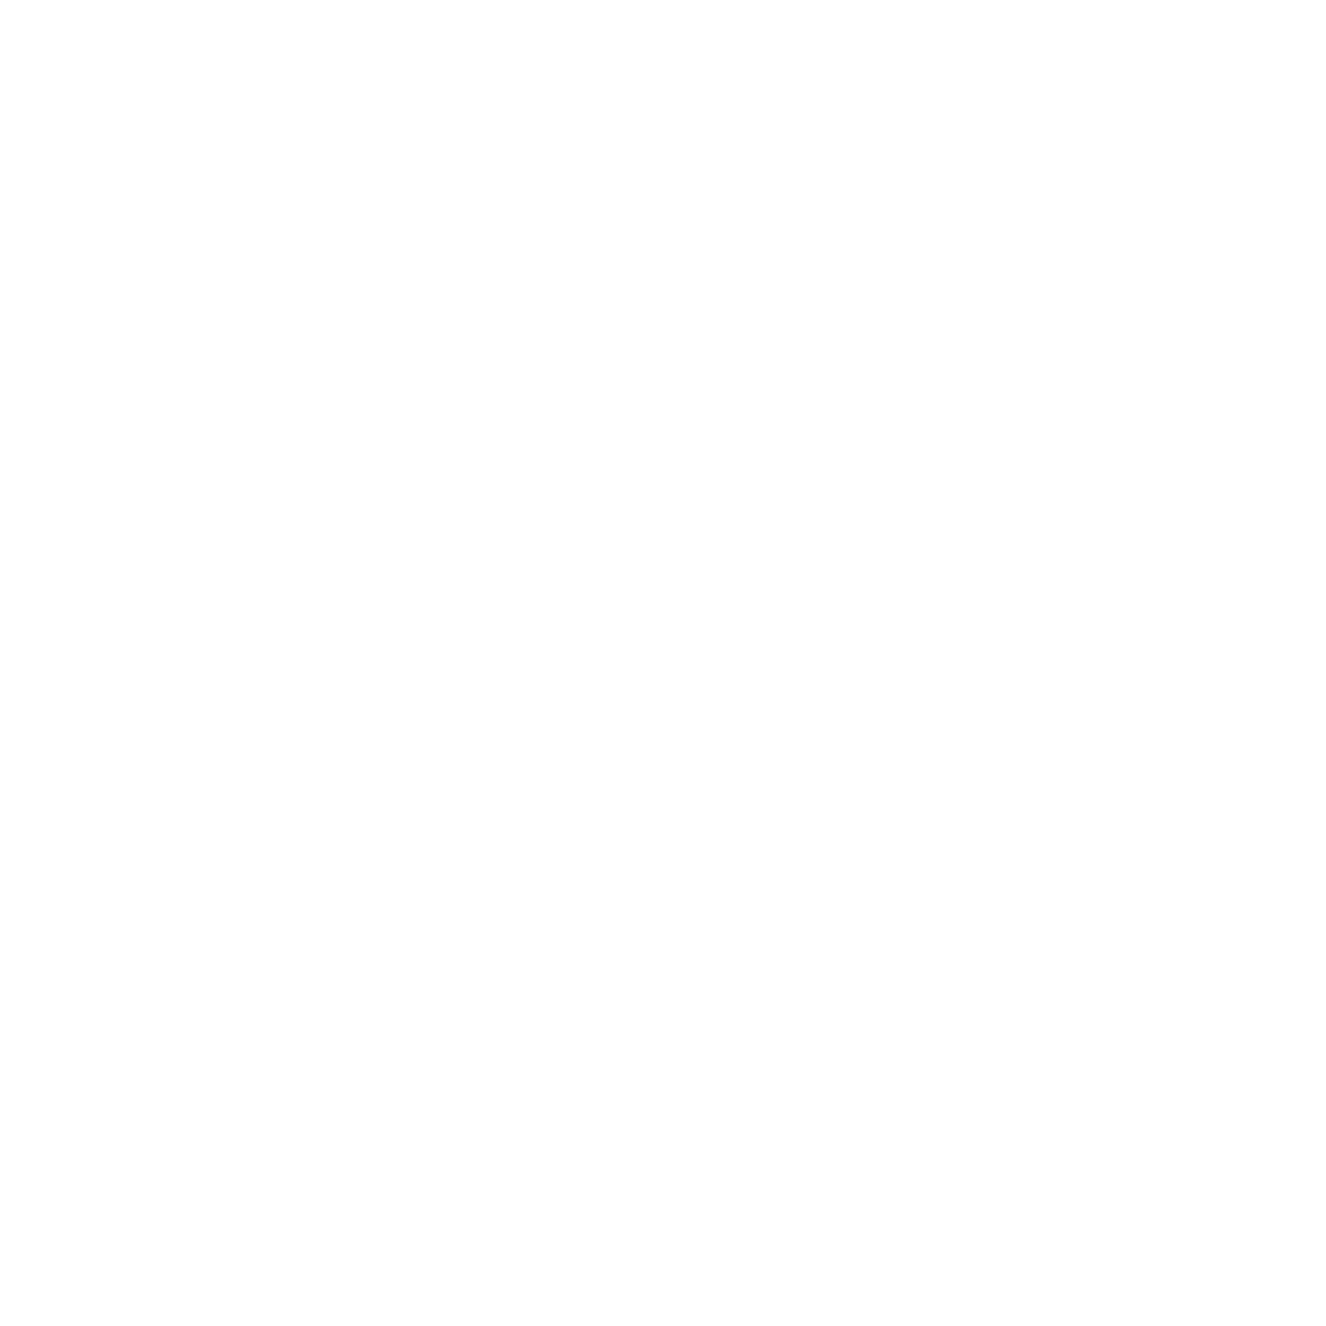 Giuseppe & Sons